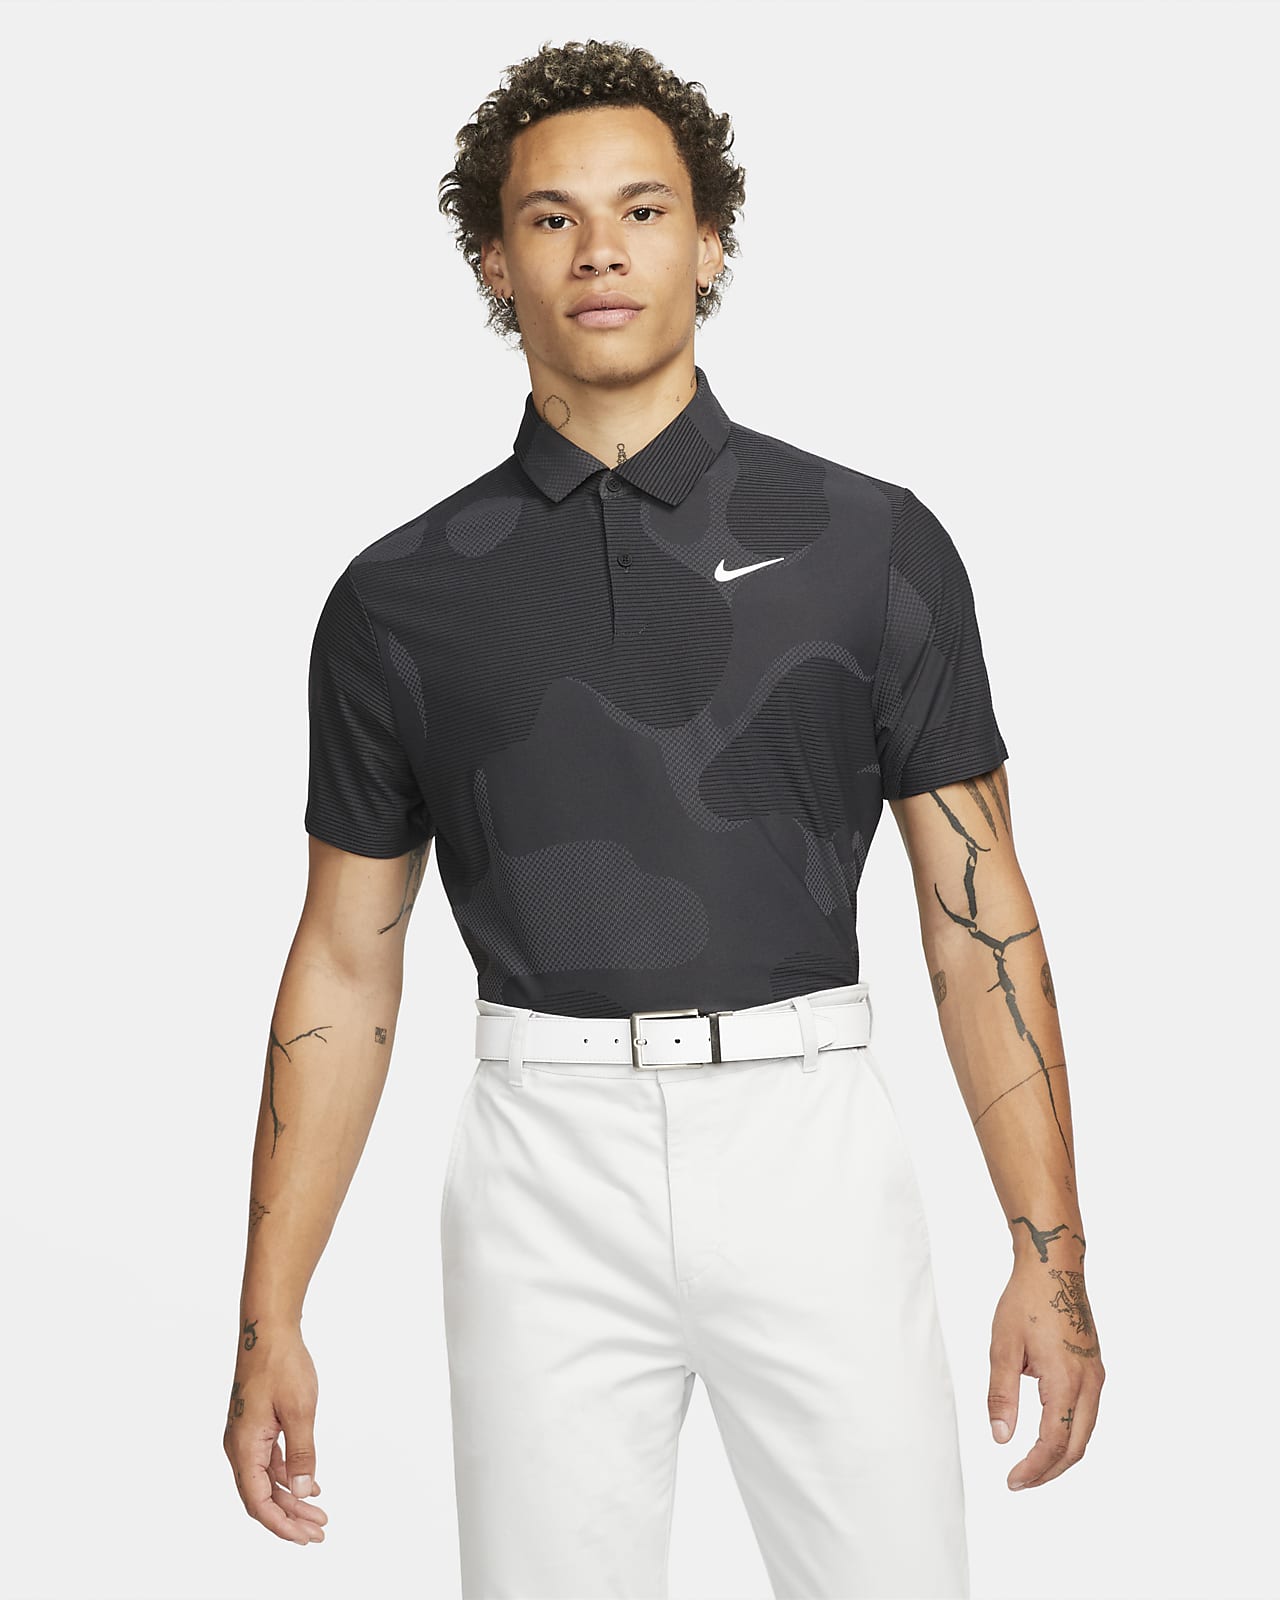 Ανδρική μπλούζα πόλο για γκολφ με μοτίβο παραλλαγής Nike Dri-FIT ADV Tour